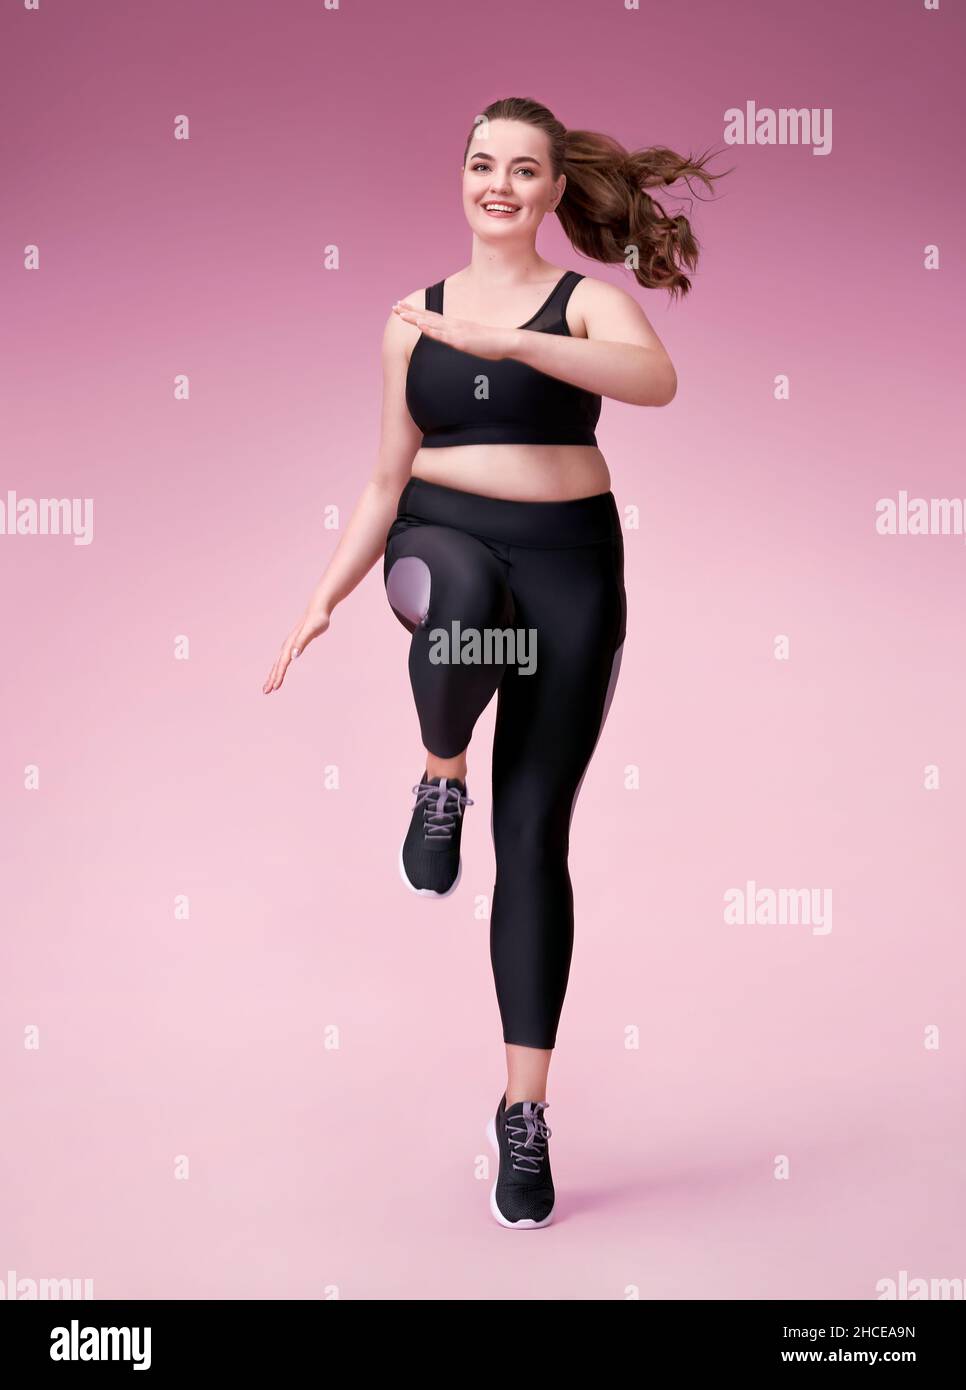 Sportliche Mädchen springen, tun Übung. Foto des Models mit kurviger Figur in modischer Sportbekleidung auf rosa Hintergrund. Dynamische Bewegung. Seitenansicht. Sport Stockfoto